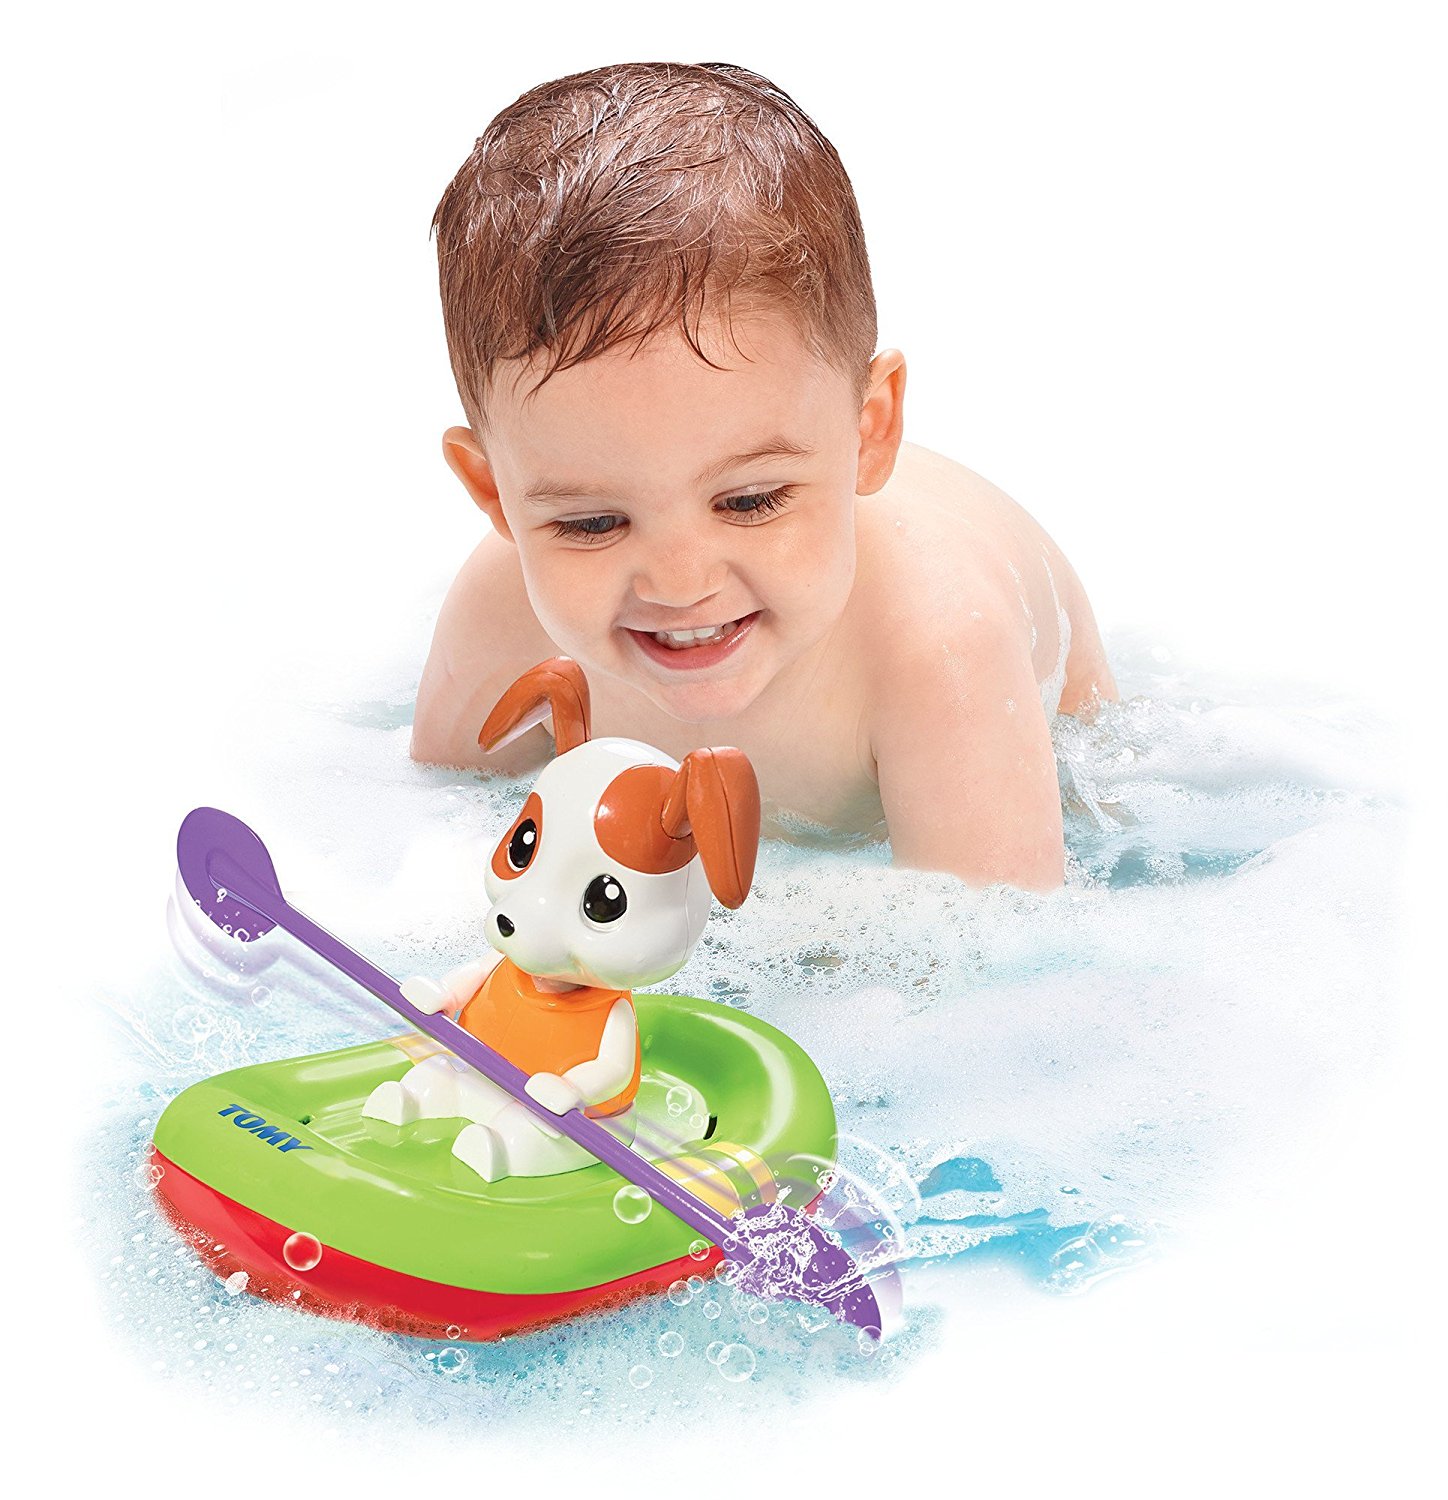 Игрушка для купания в ванне. Tomy e7297. Tomy Toomies. Игрушки Tomy щенок в лодке е 72424. Детские игрушки для ванны.